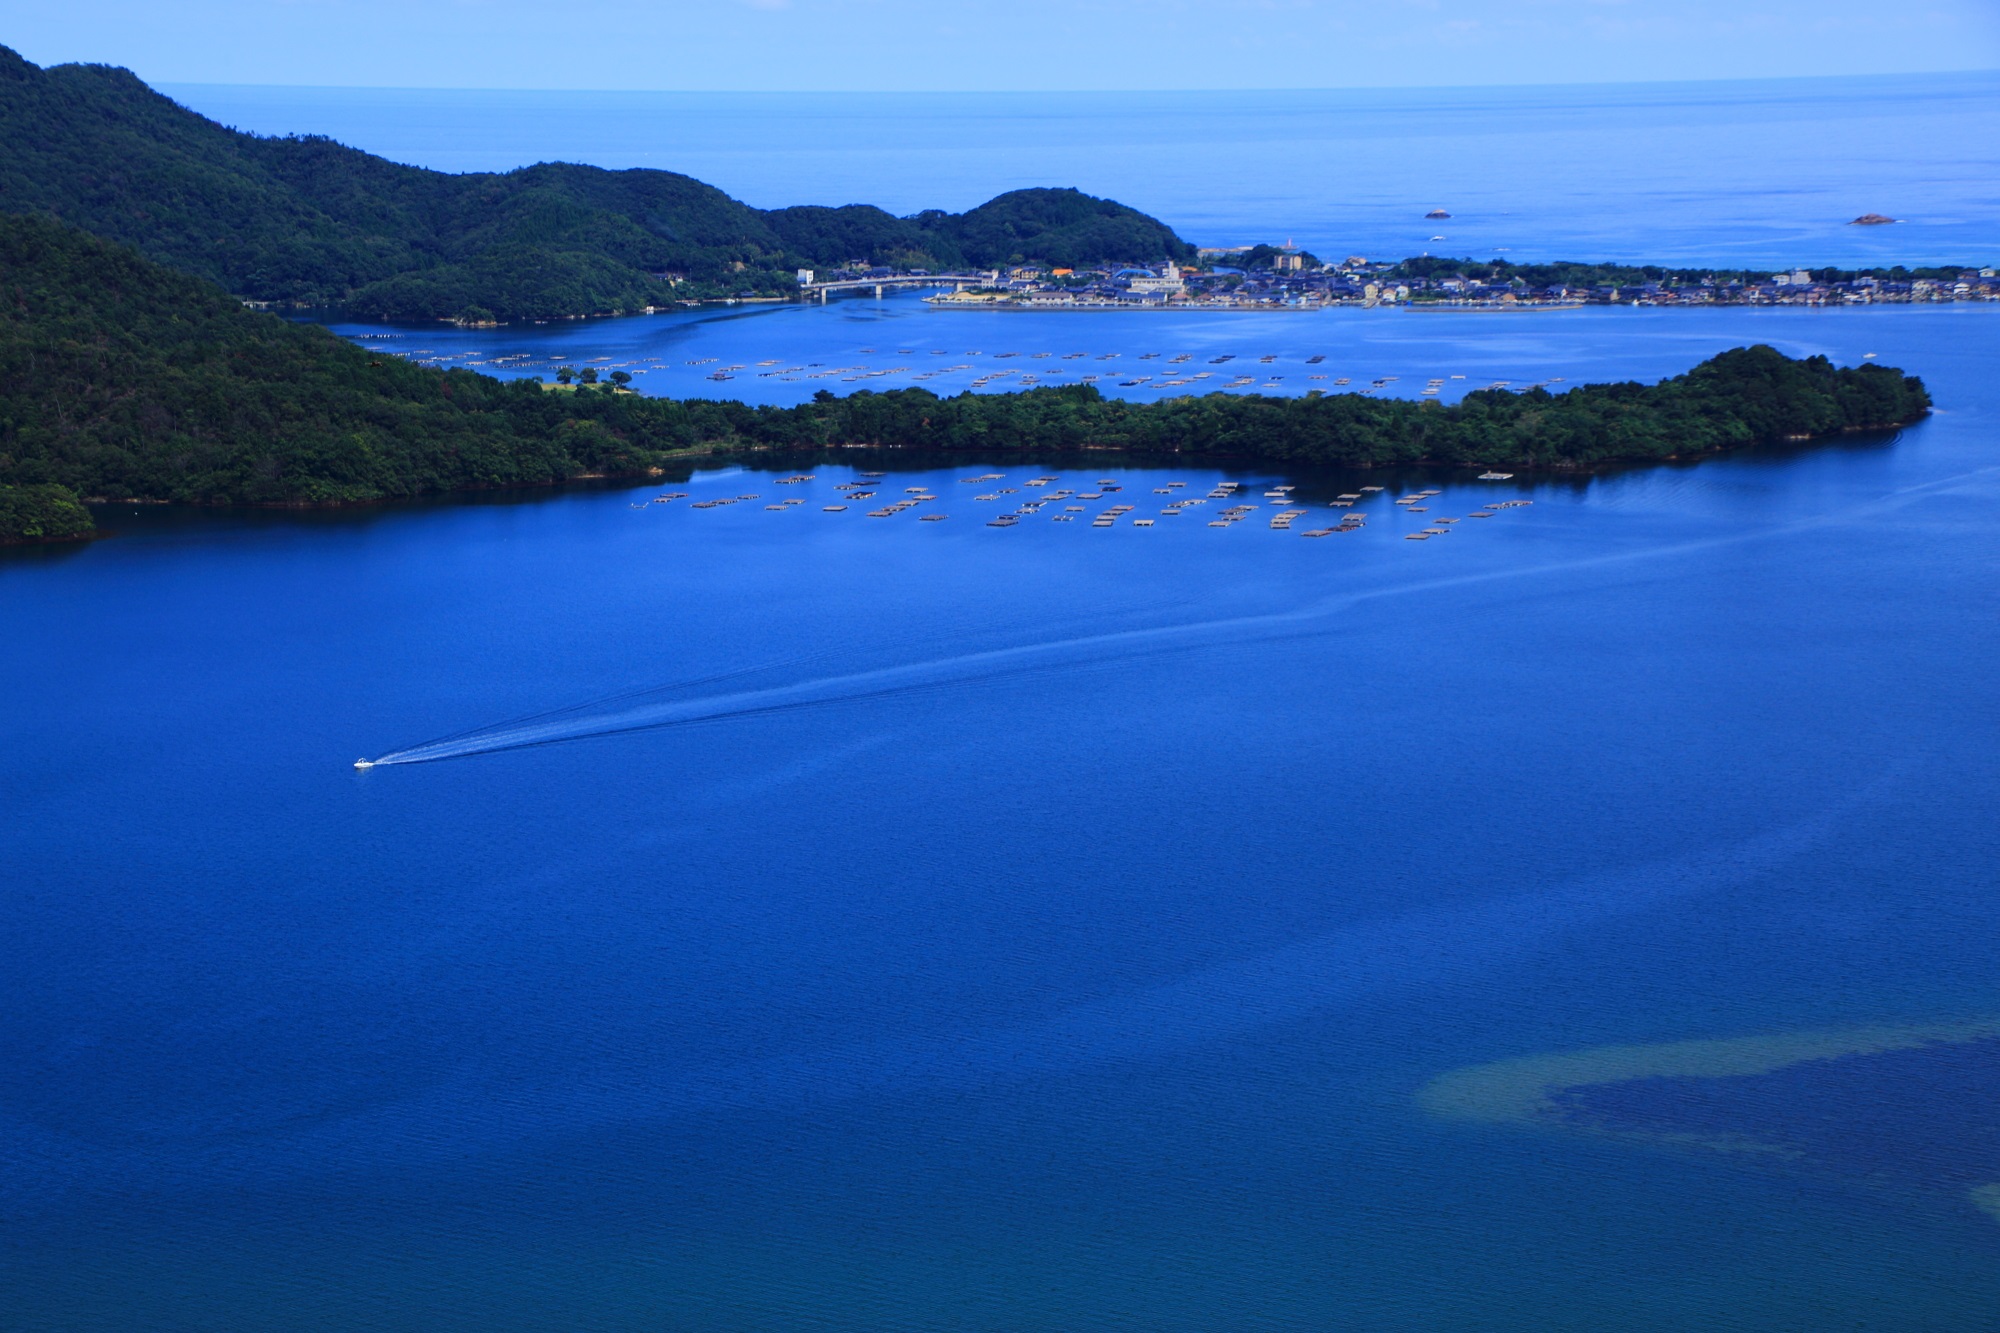 京丹後の兜山から眺める美しい久美浜湾の何時間でも見ていられそうな水と緑の絶景